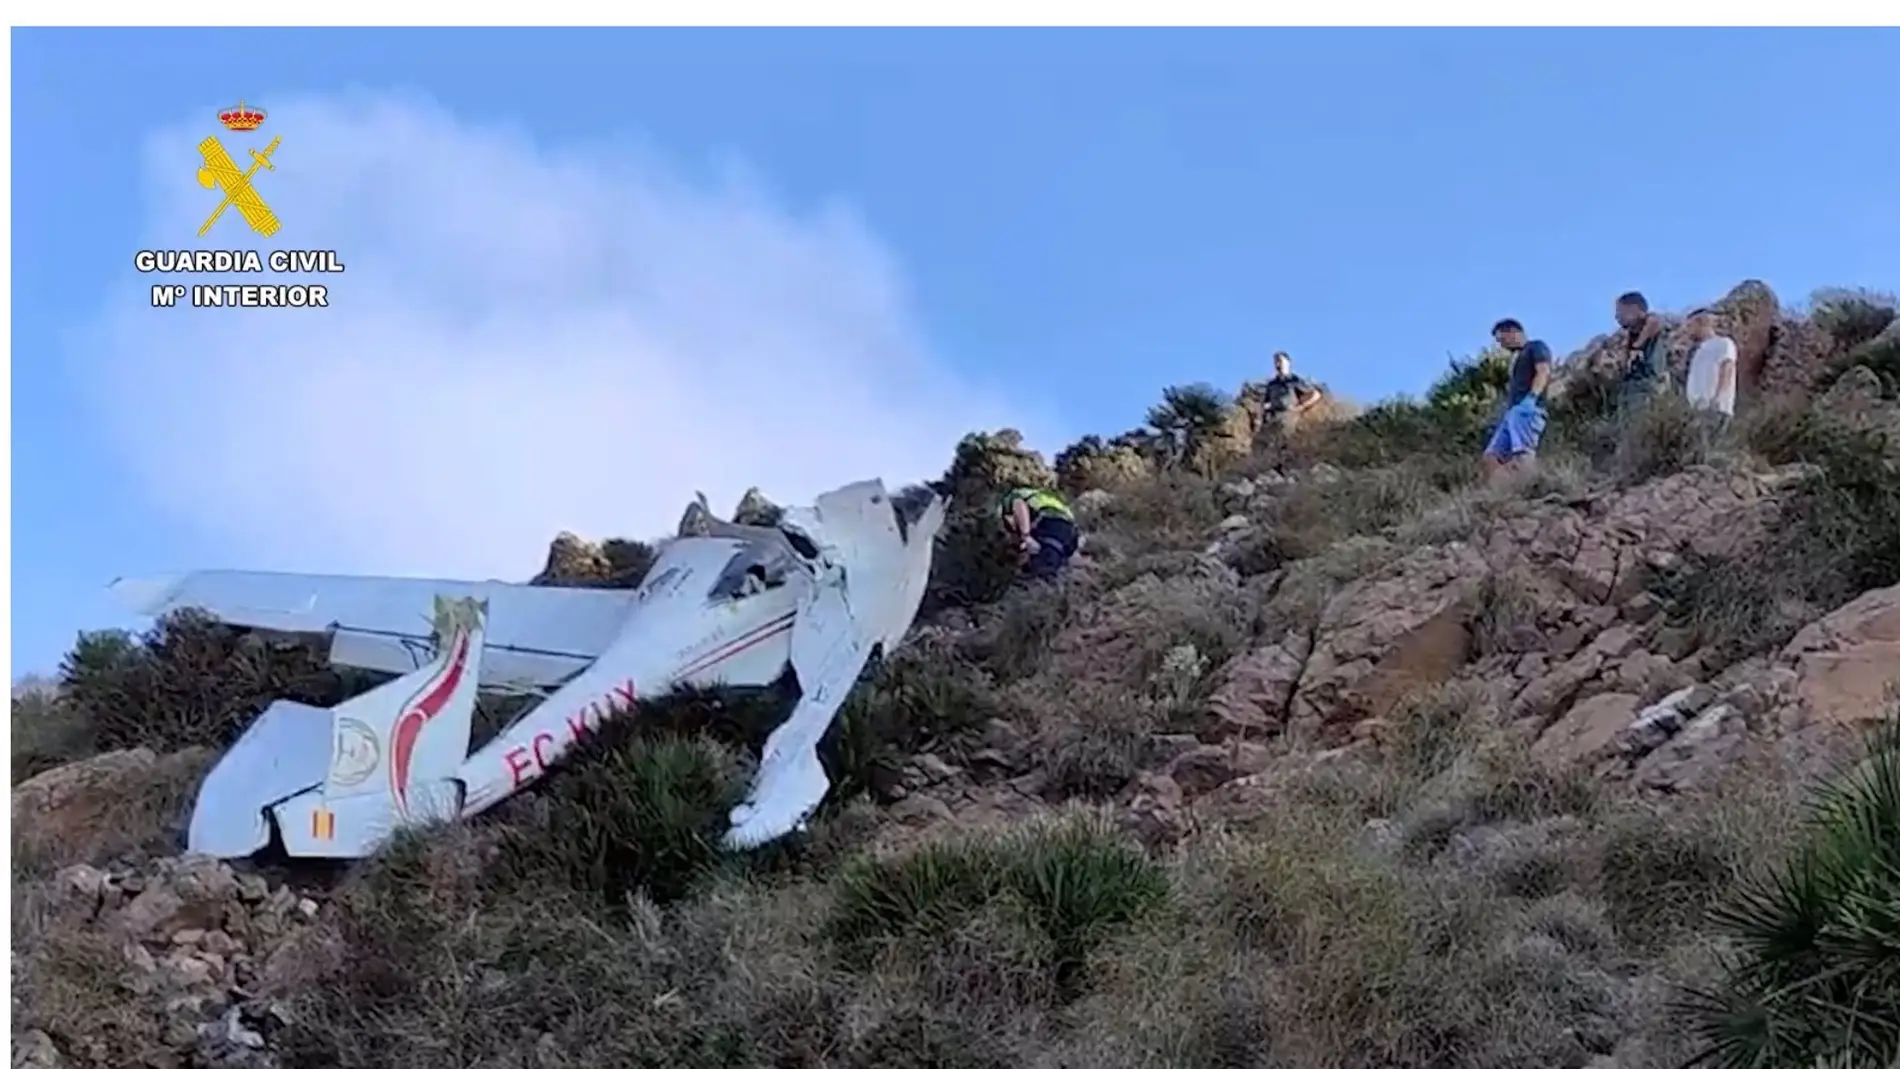 Avioneta accidentada en el Cerro del Fraile, en el Parque Natural Cabo de Gata-Níjar